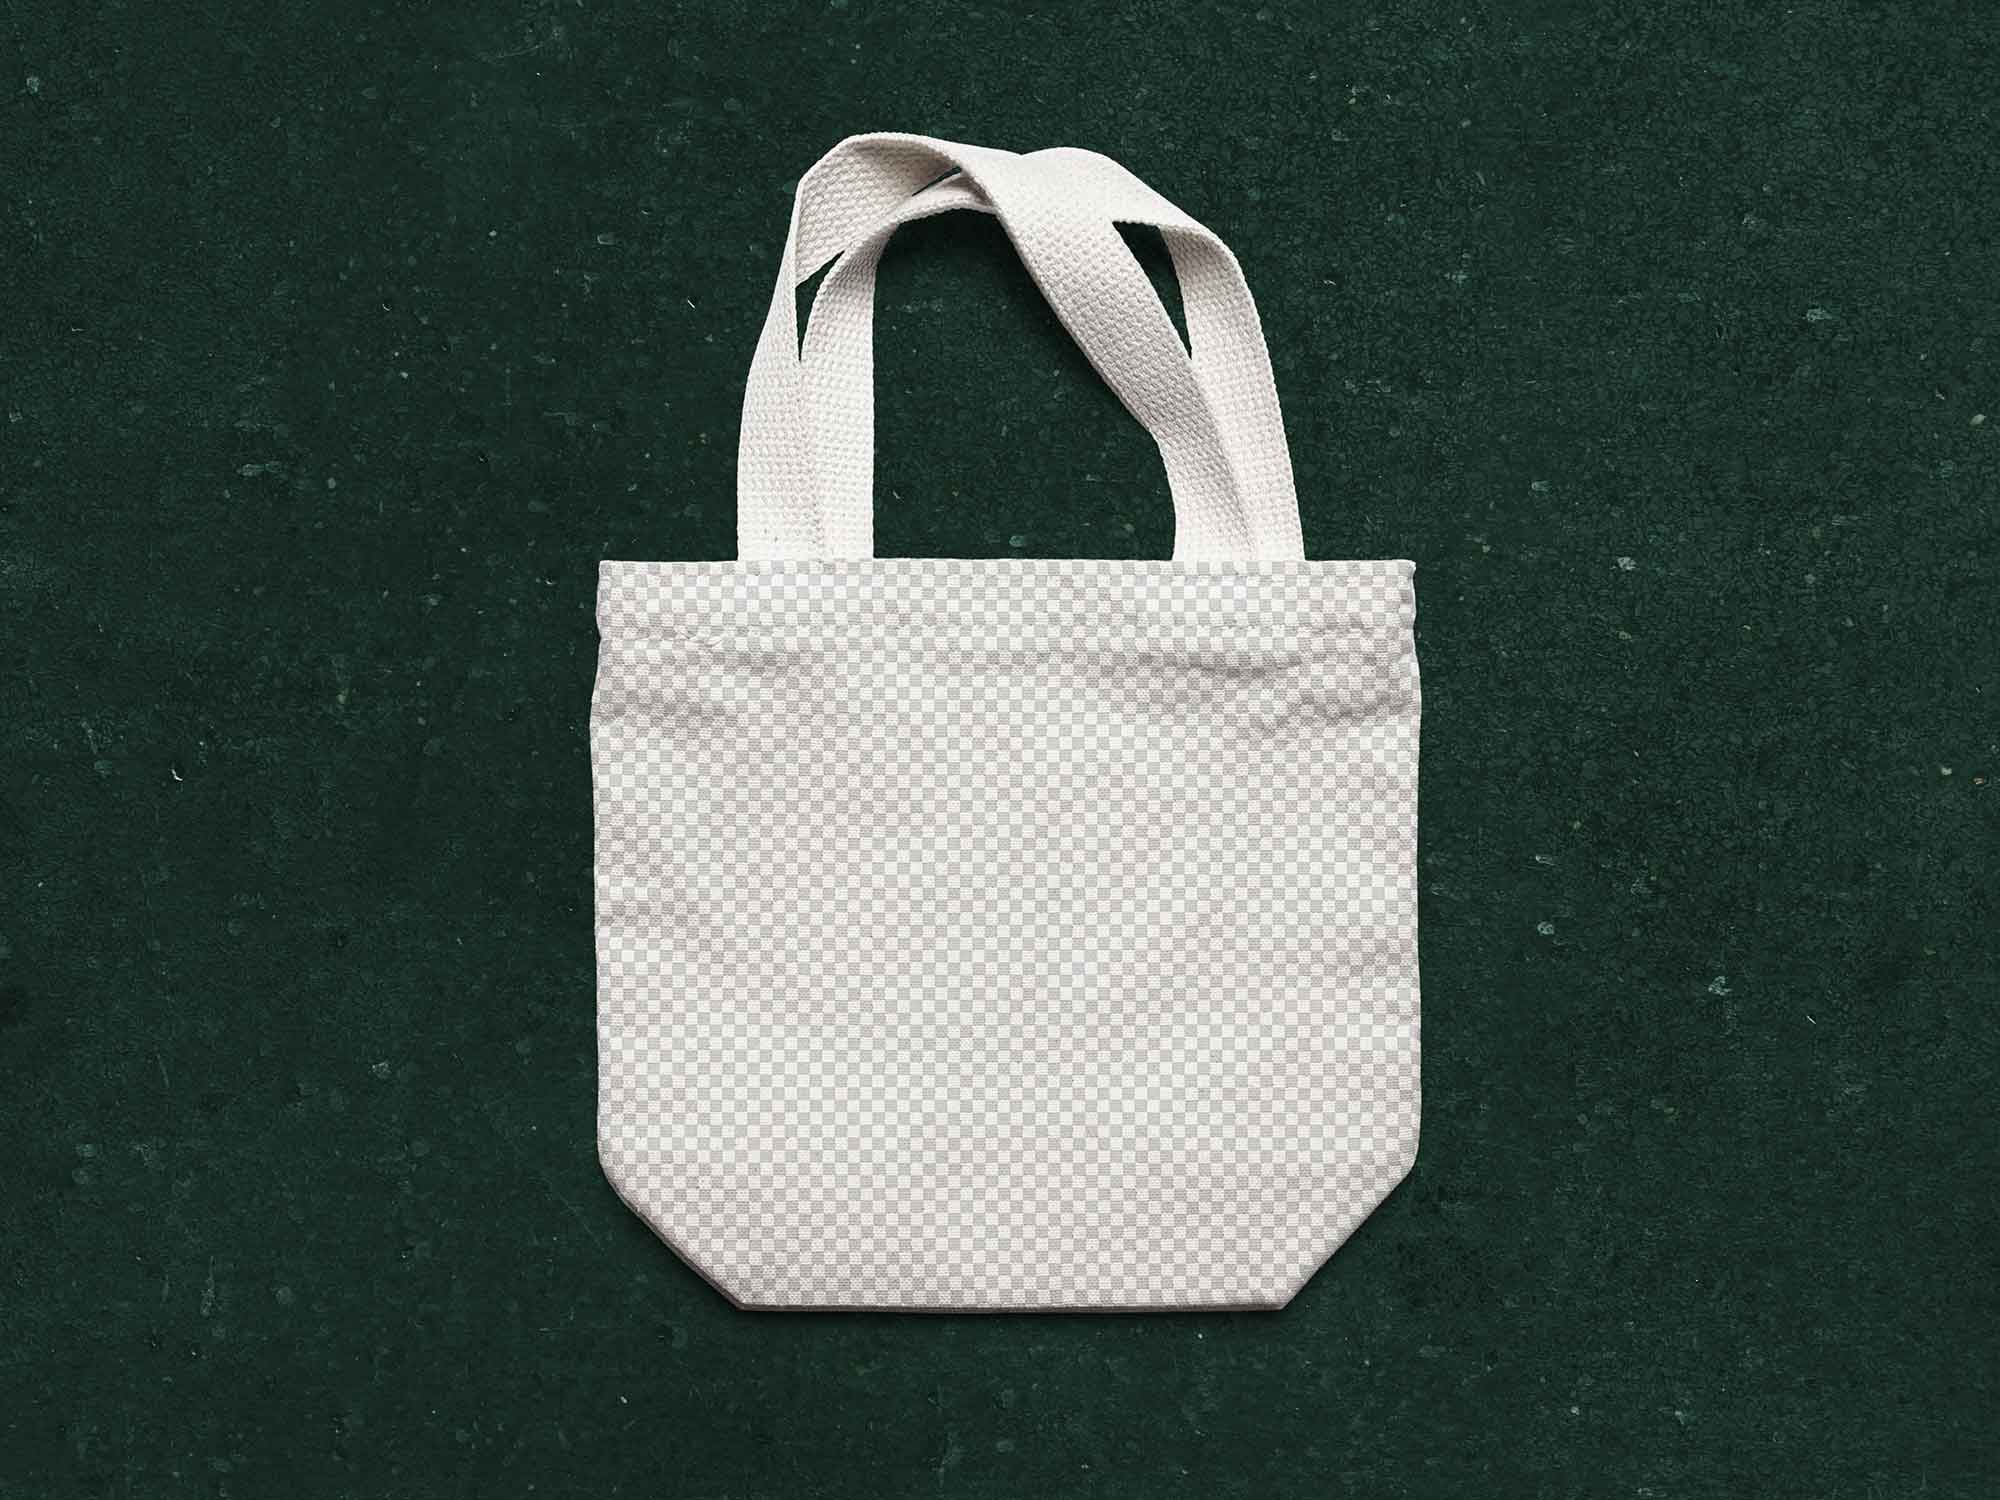 small reusable bag mockup psd